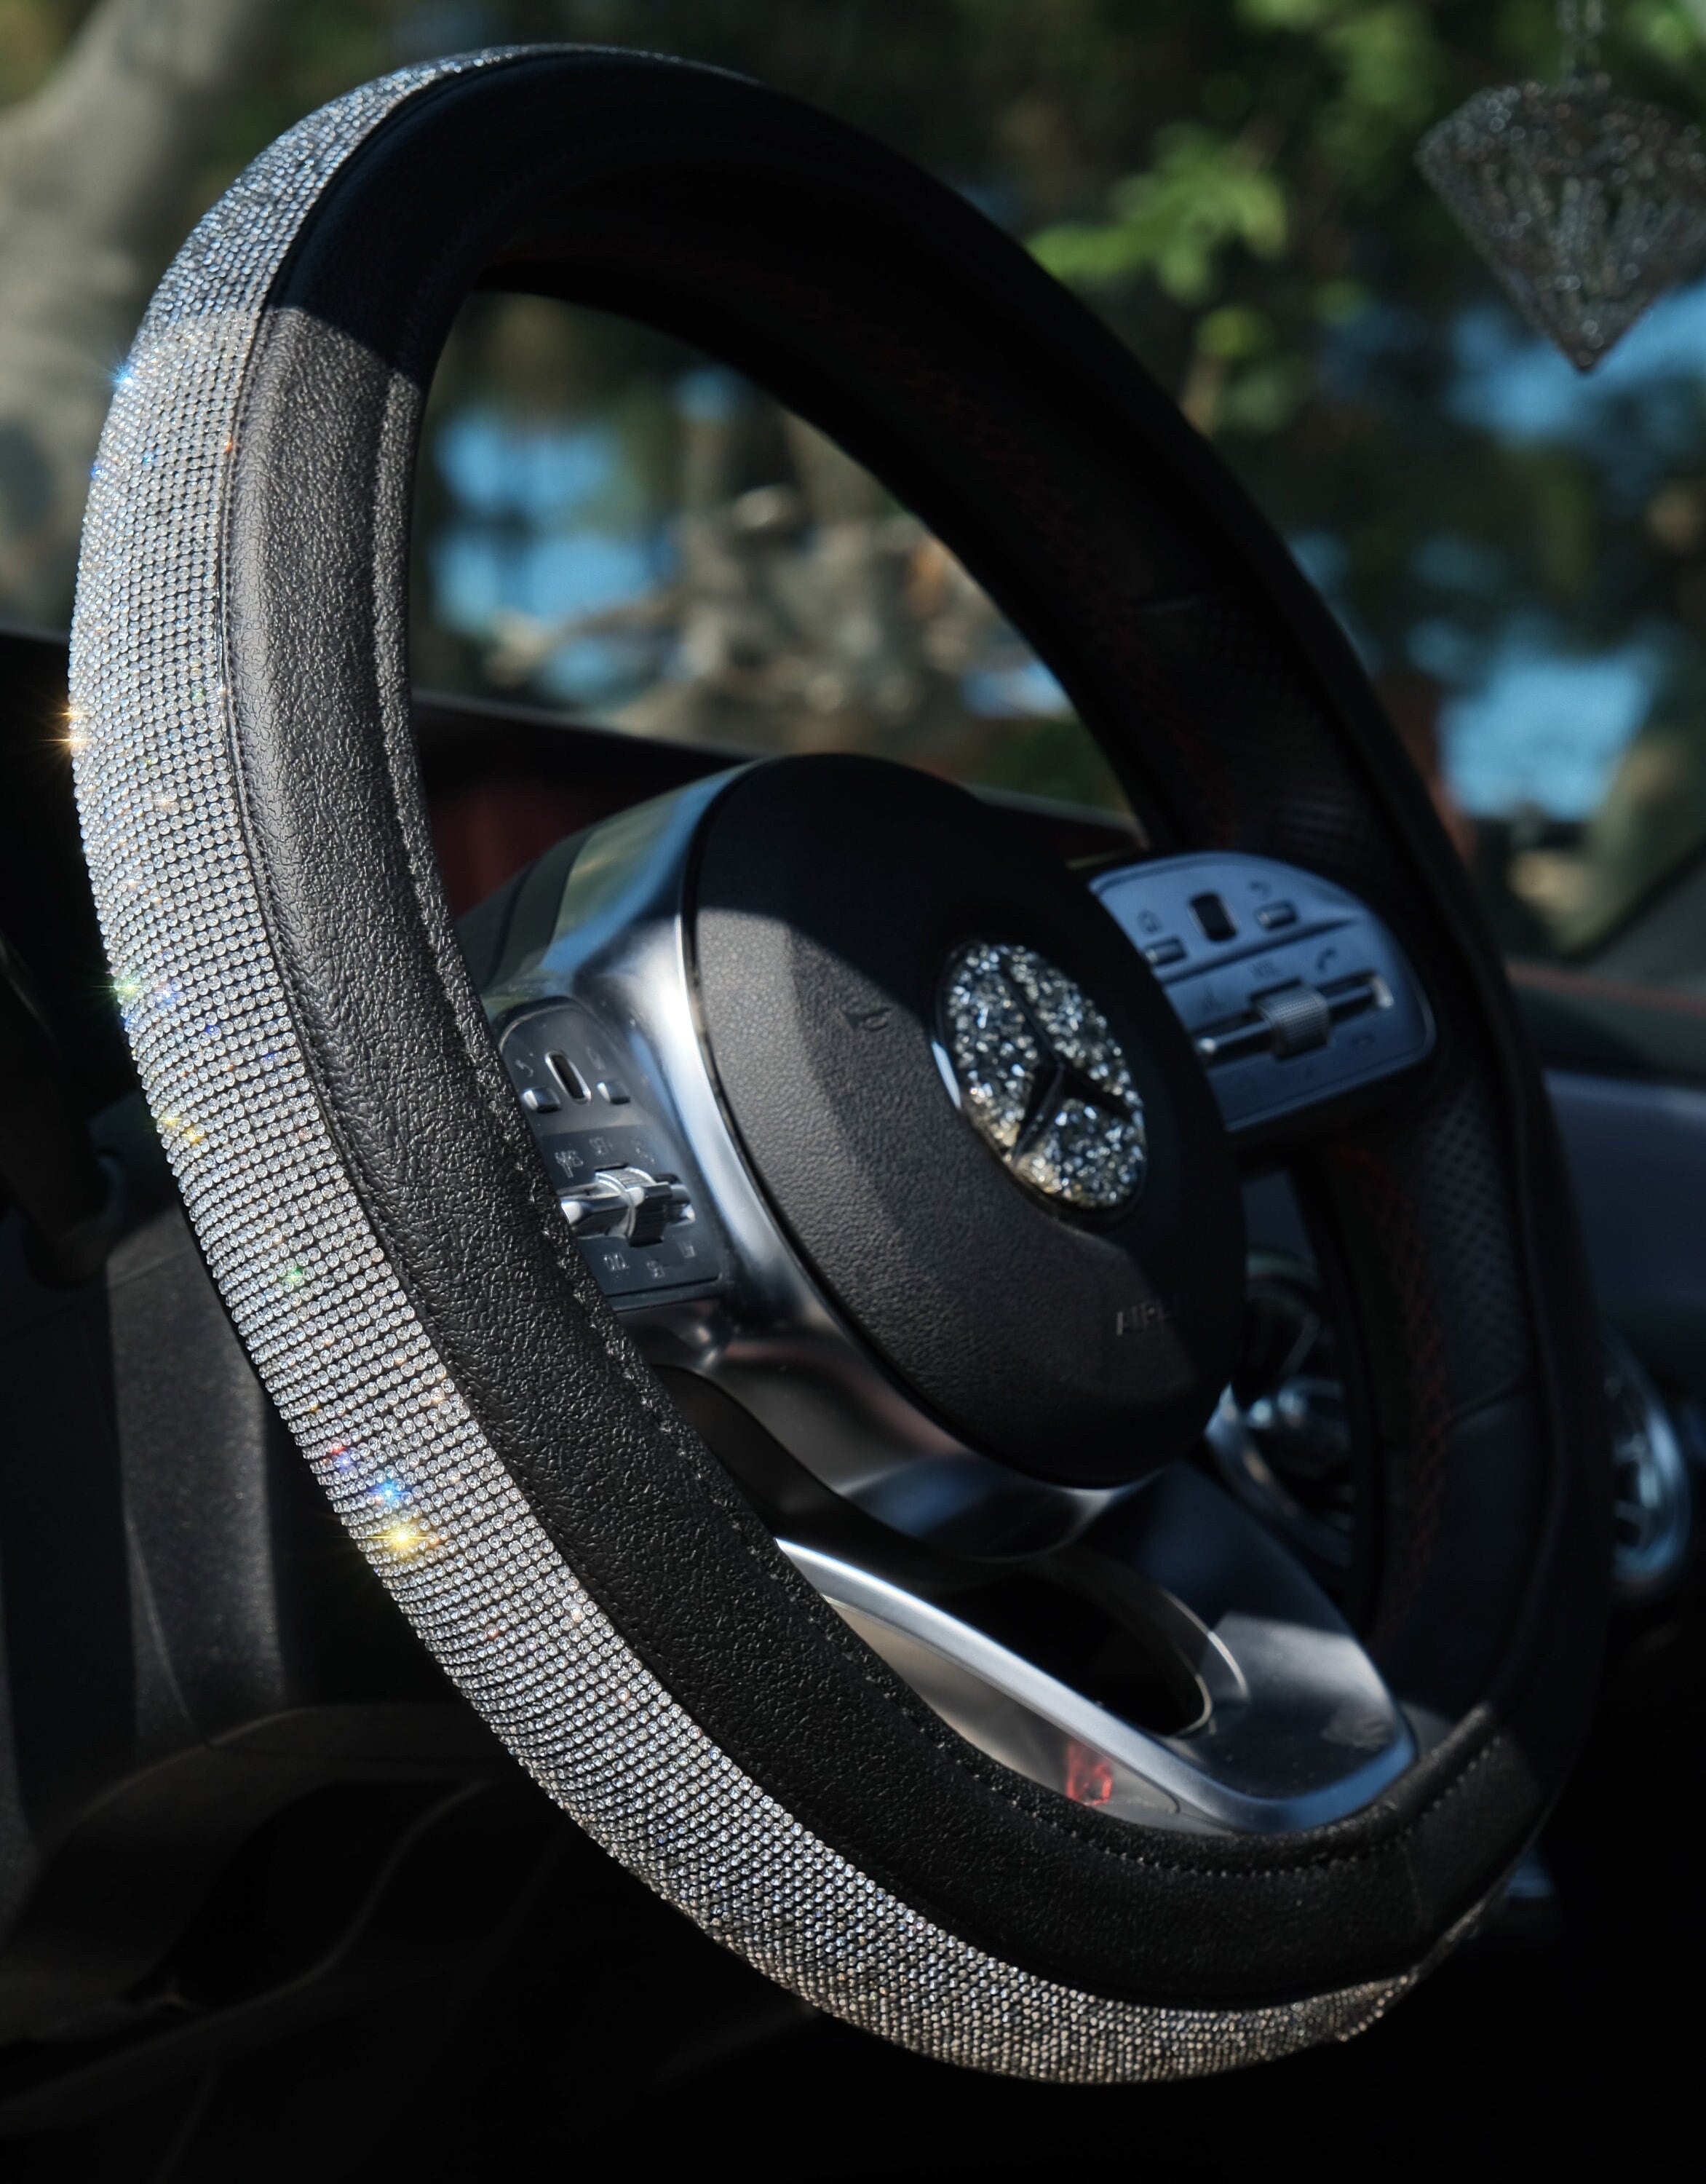 Sparkly steering wheel cover - .de